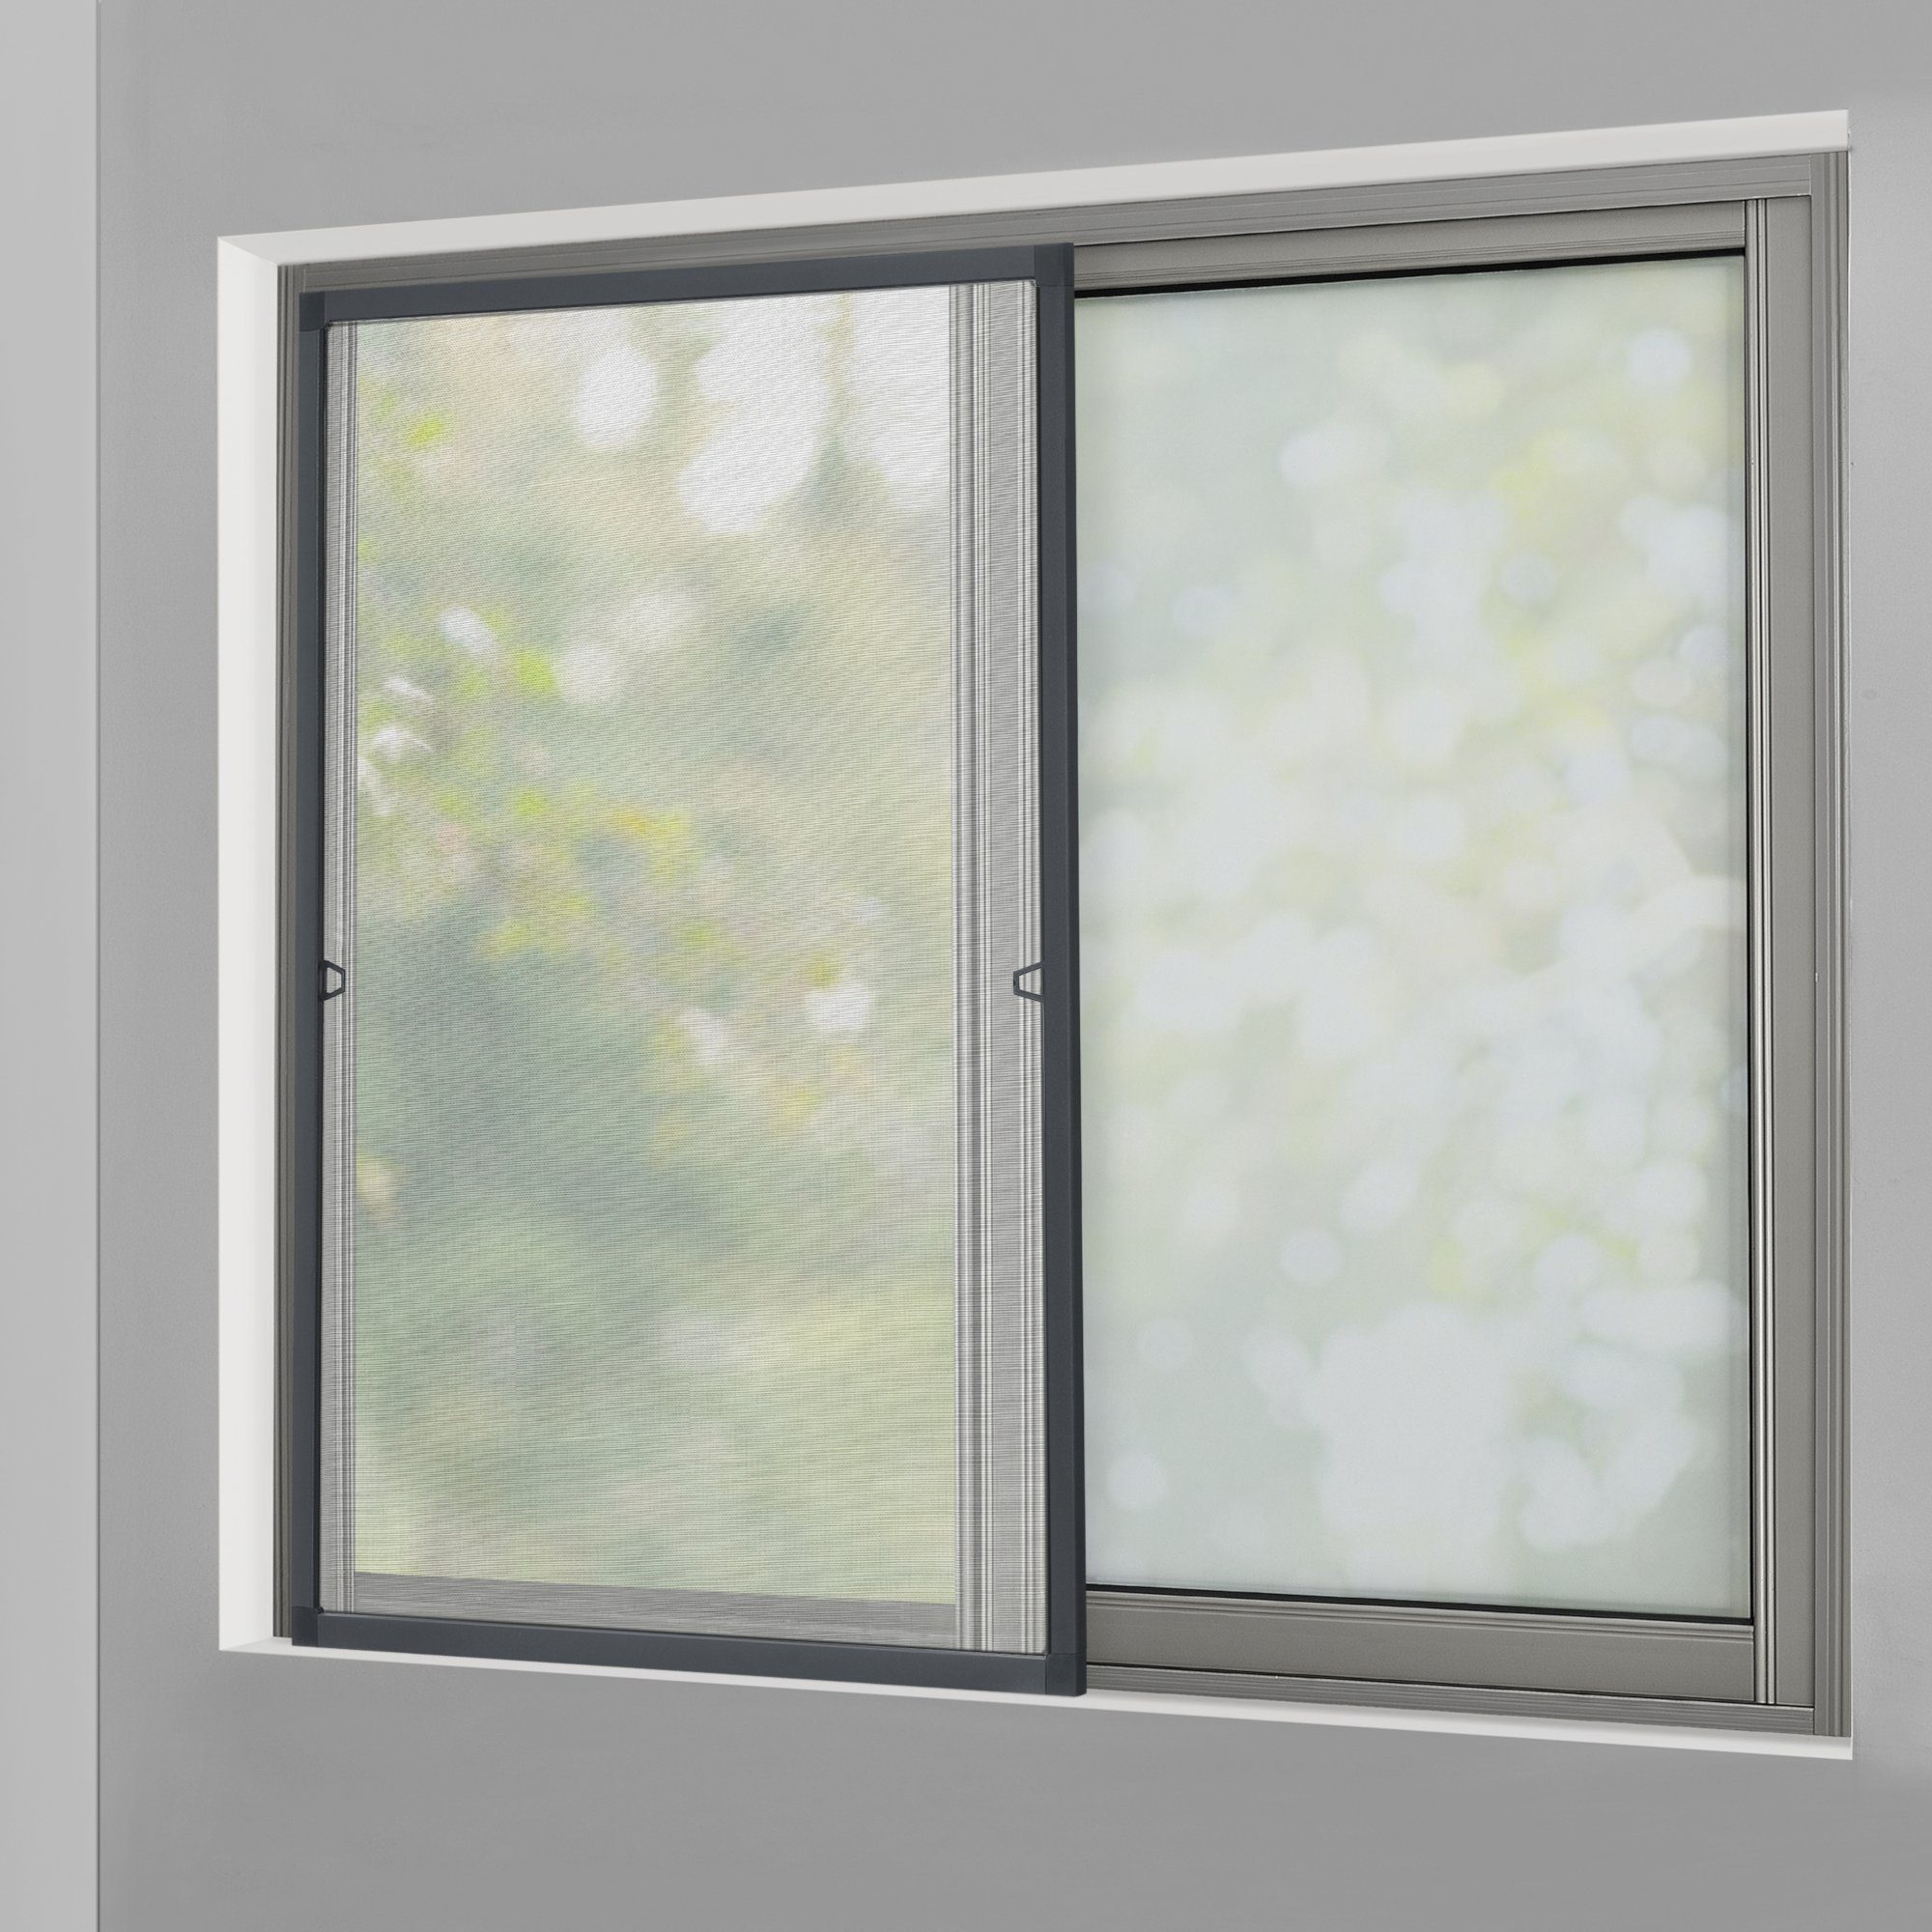 1,5m x 1,8m tesa Fliegengitter für Fenster Standard leichter Sichtschutz weiß